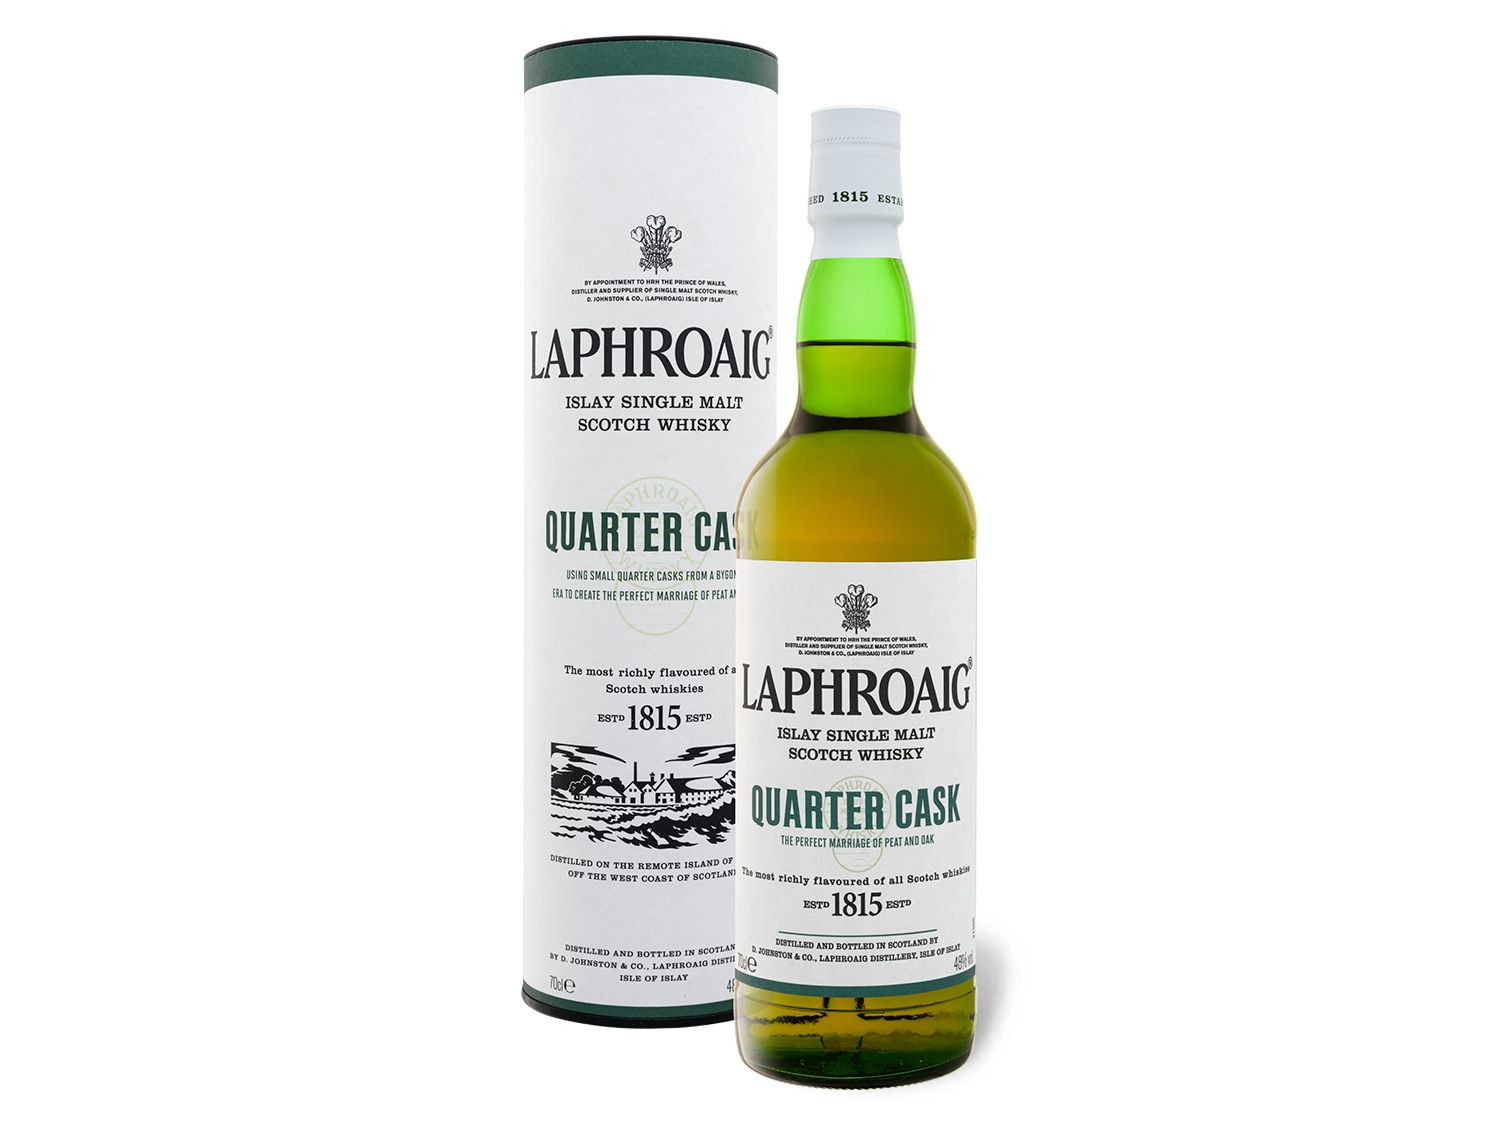 Laphroaig Quarter Cask Scotch Islay Malt Whisky… Single